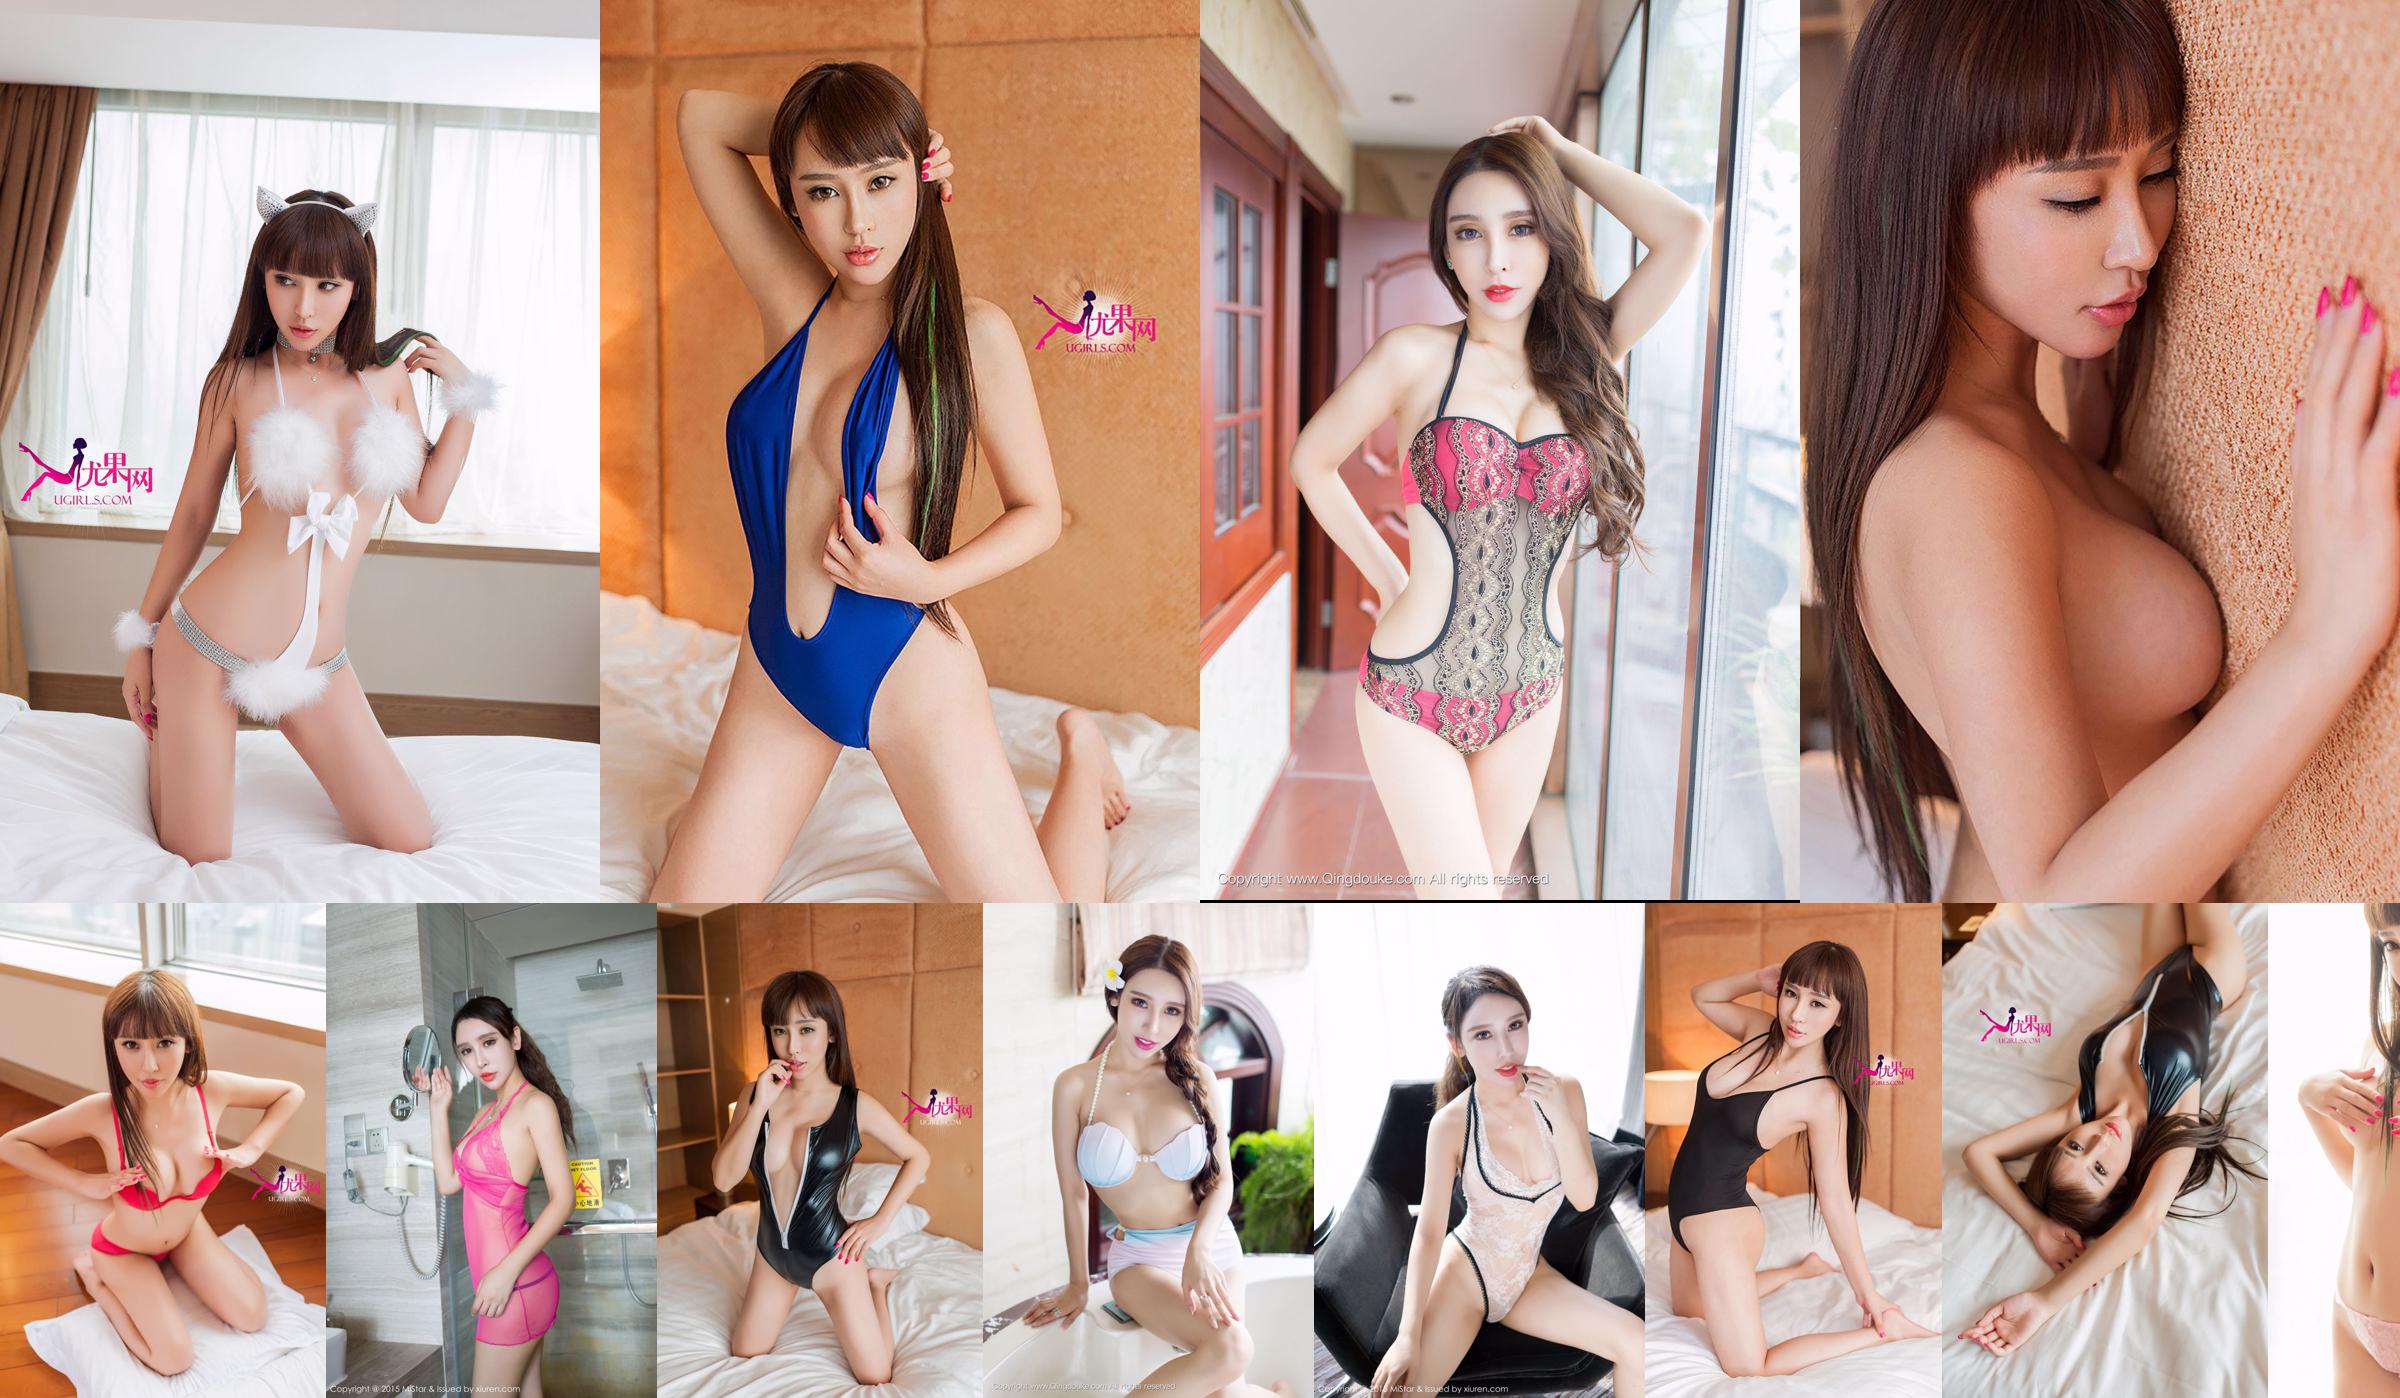 Yang Nuoyi "Uniform + Sexy Lingerie" [MiStar] Vol.053 No.cdad9e Page 2